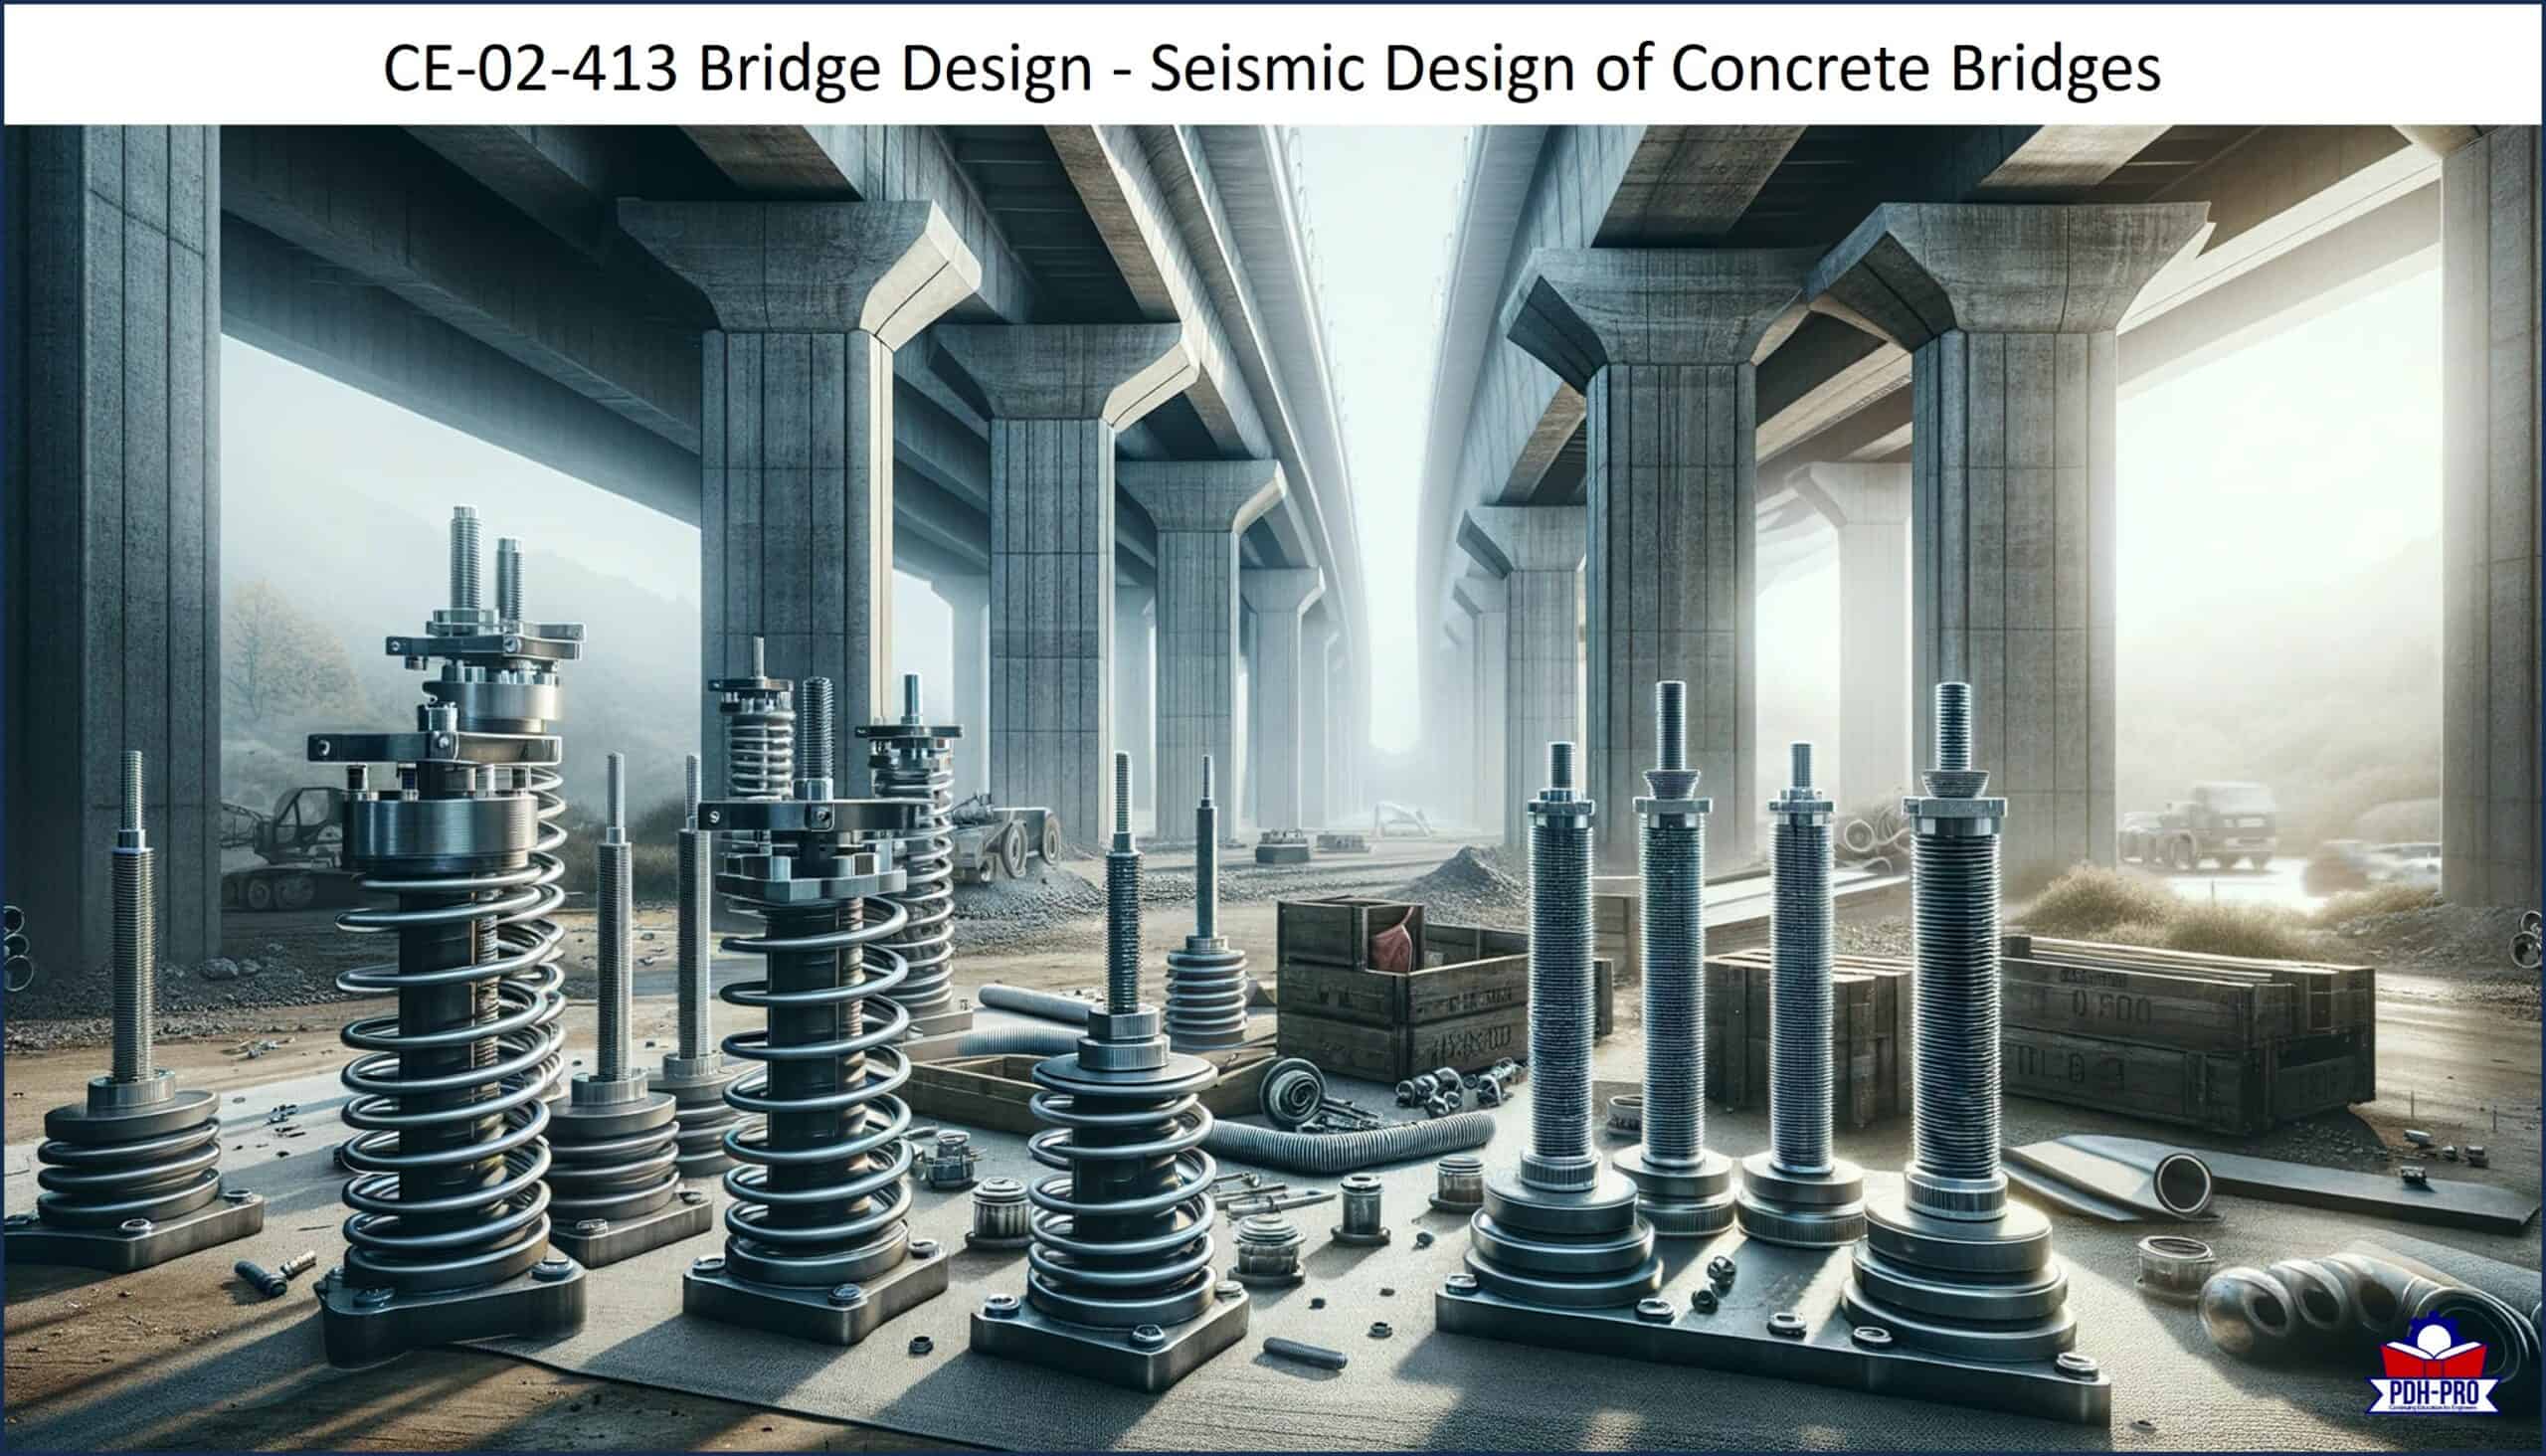 Bridge Design - Seismic Design of Concrete Bridges